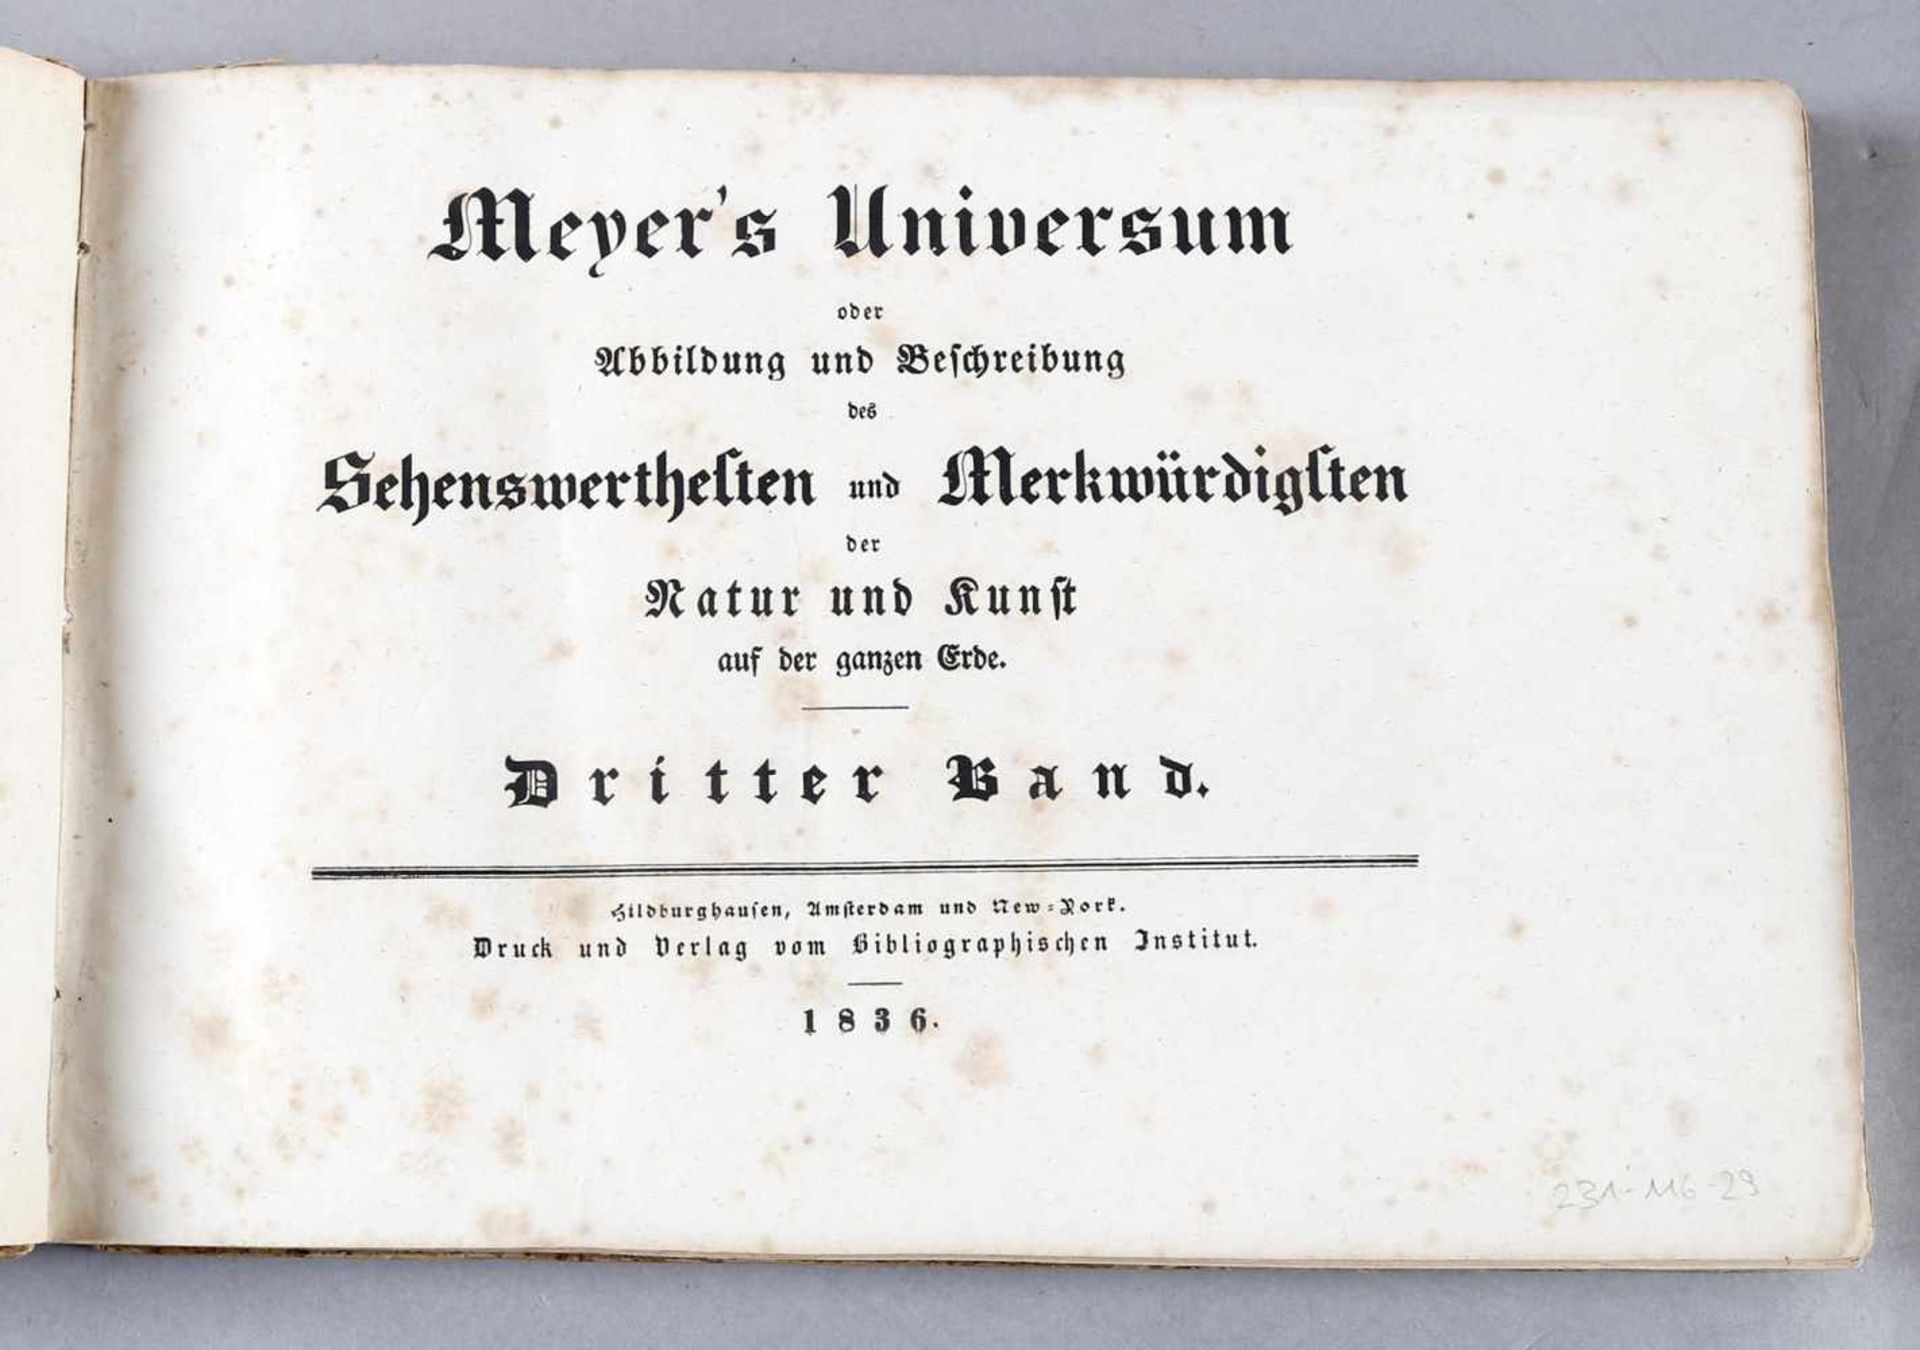 Meyer´s Universum, dritter Band, 1836"Abbildung und Beschreibung der Sehenswerthesten und